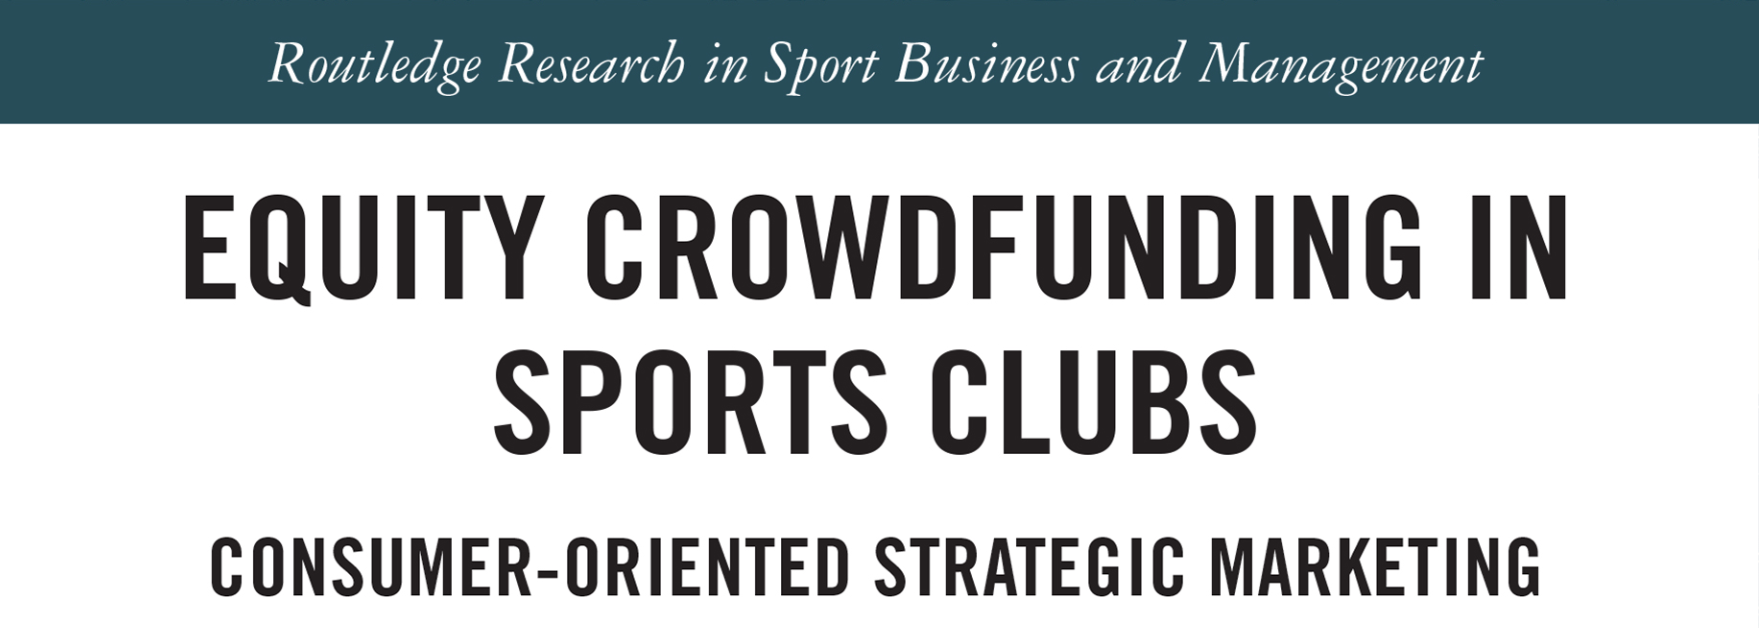 Zarządzanie marketingowe kampaniami inwestowania społecznościowego klubów sportowych